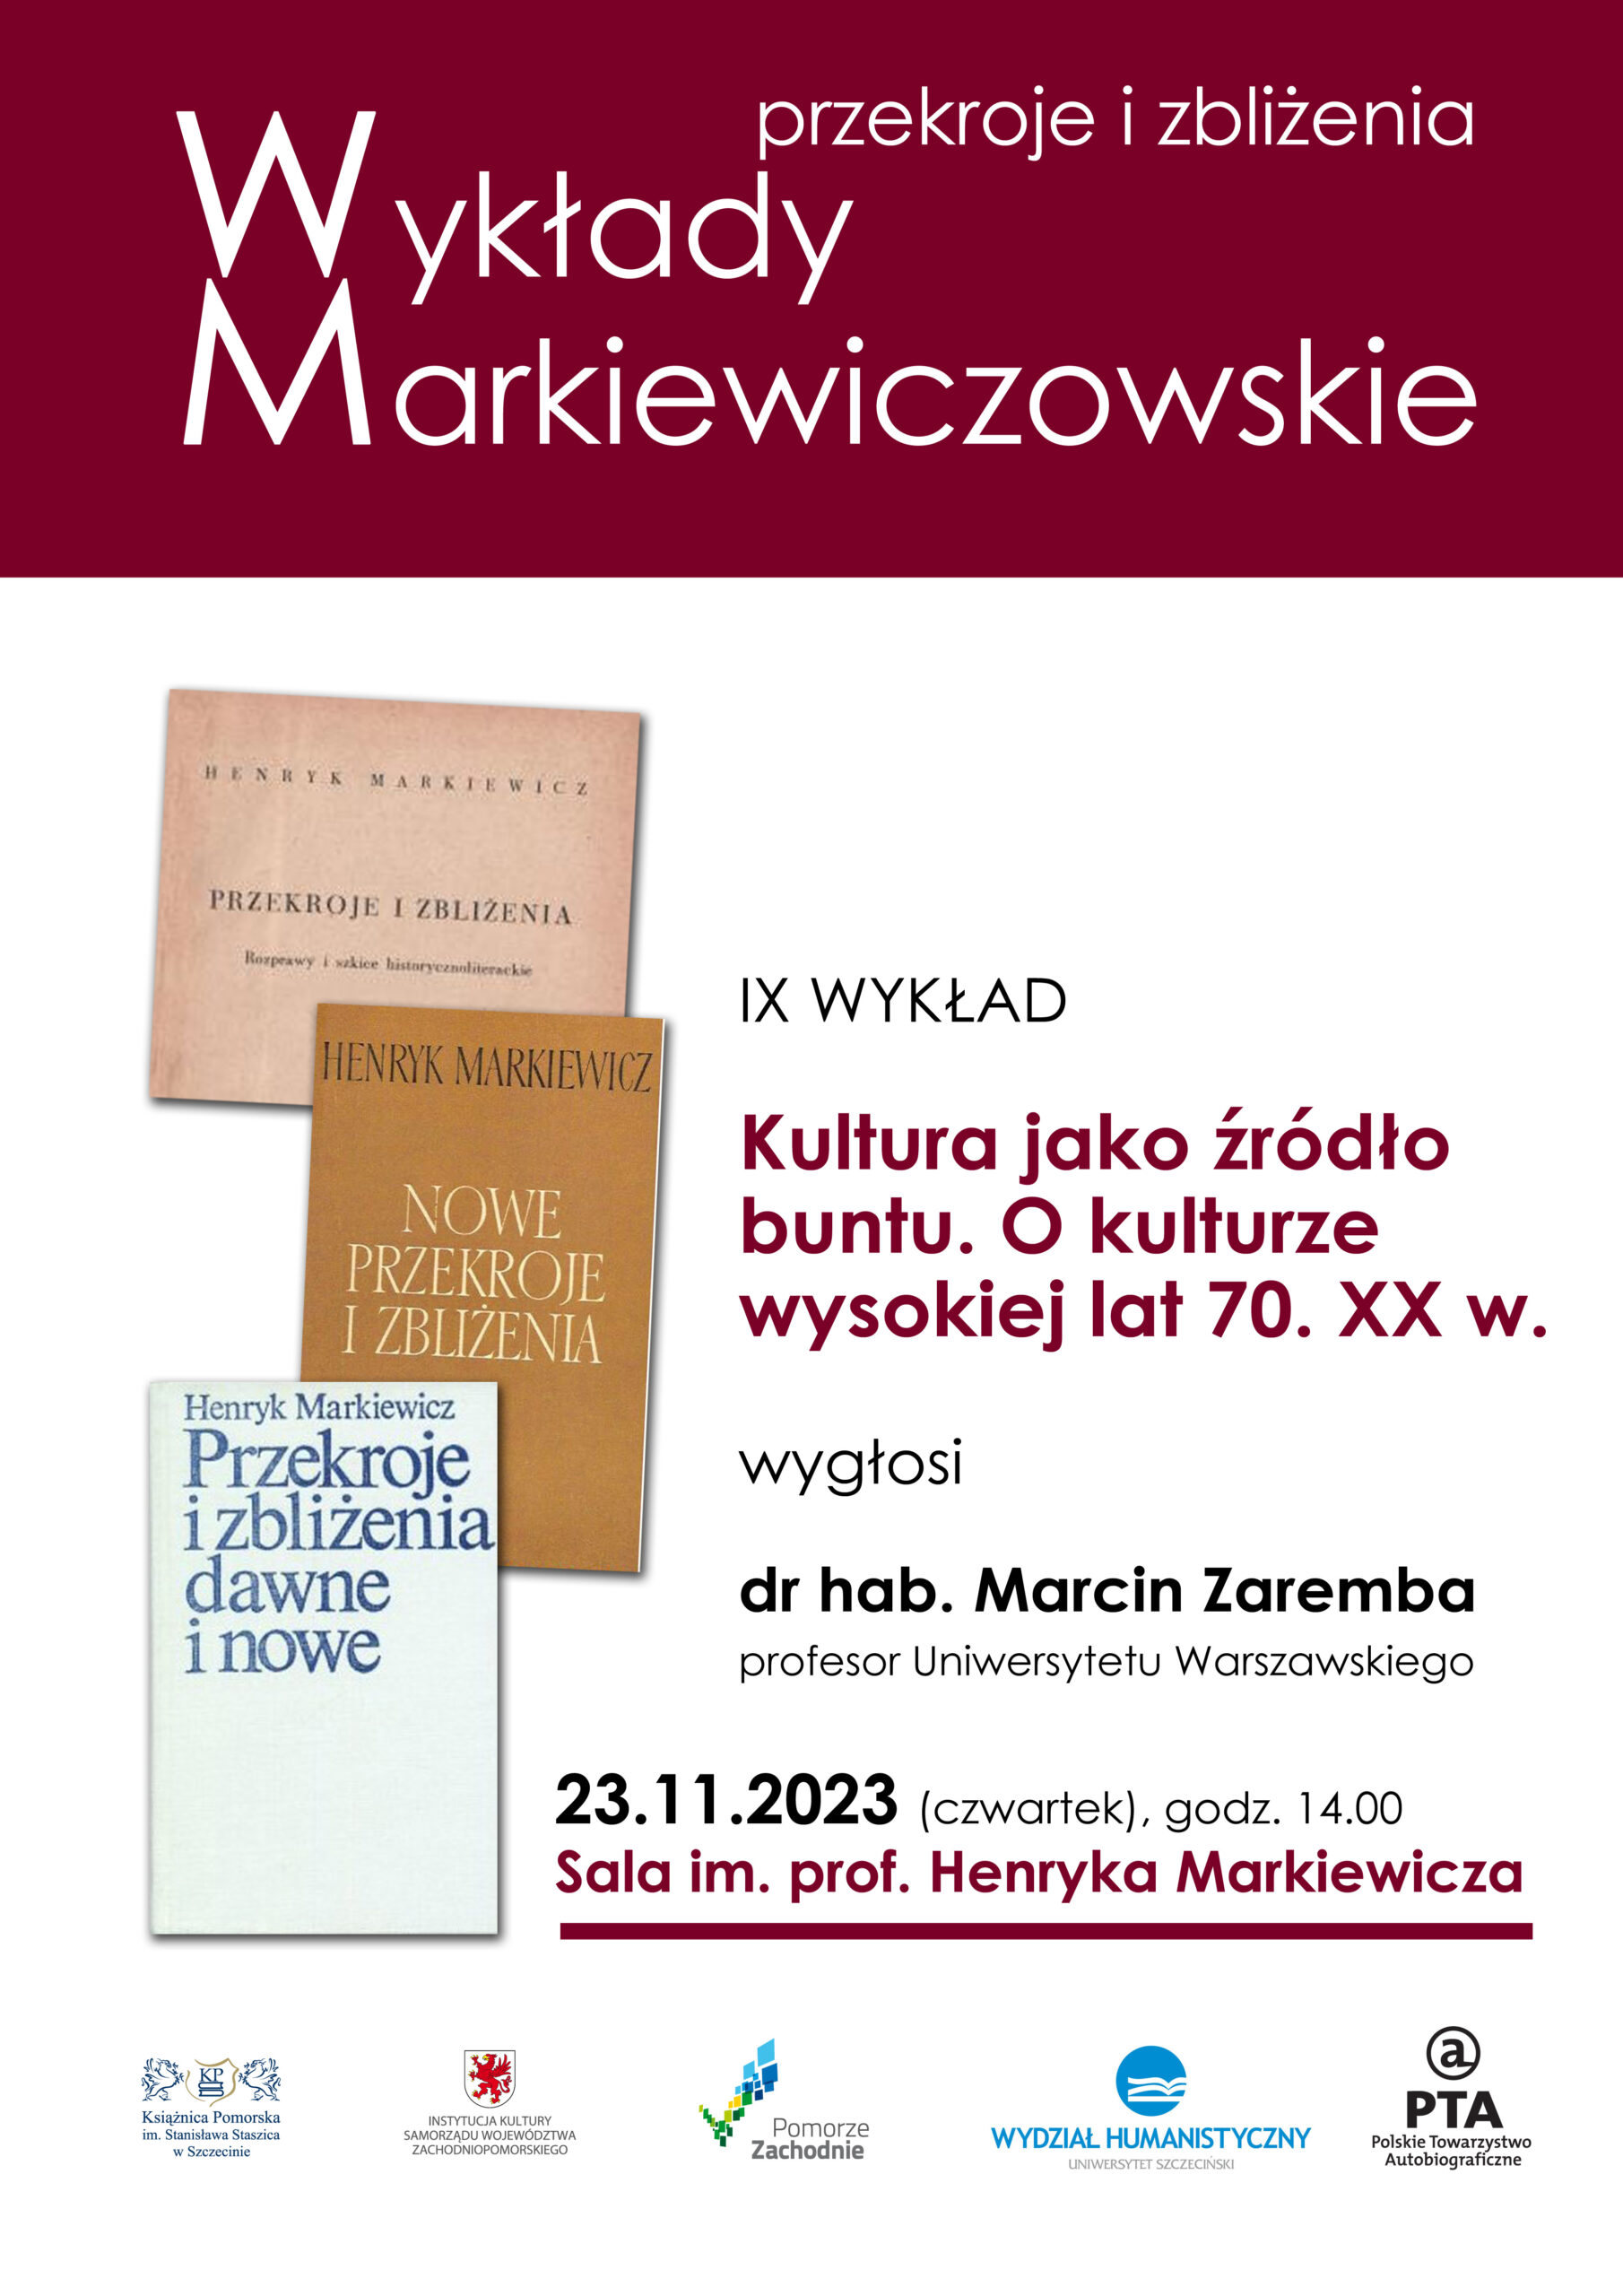 Przekroje i zbliżenia. Wykłady Markiewiczowskie – 23 listopada 2023 r.